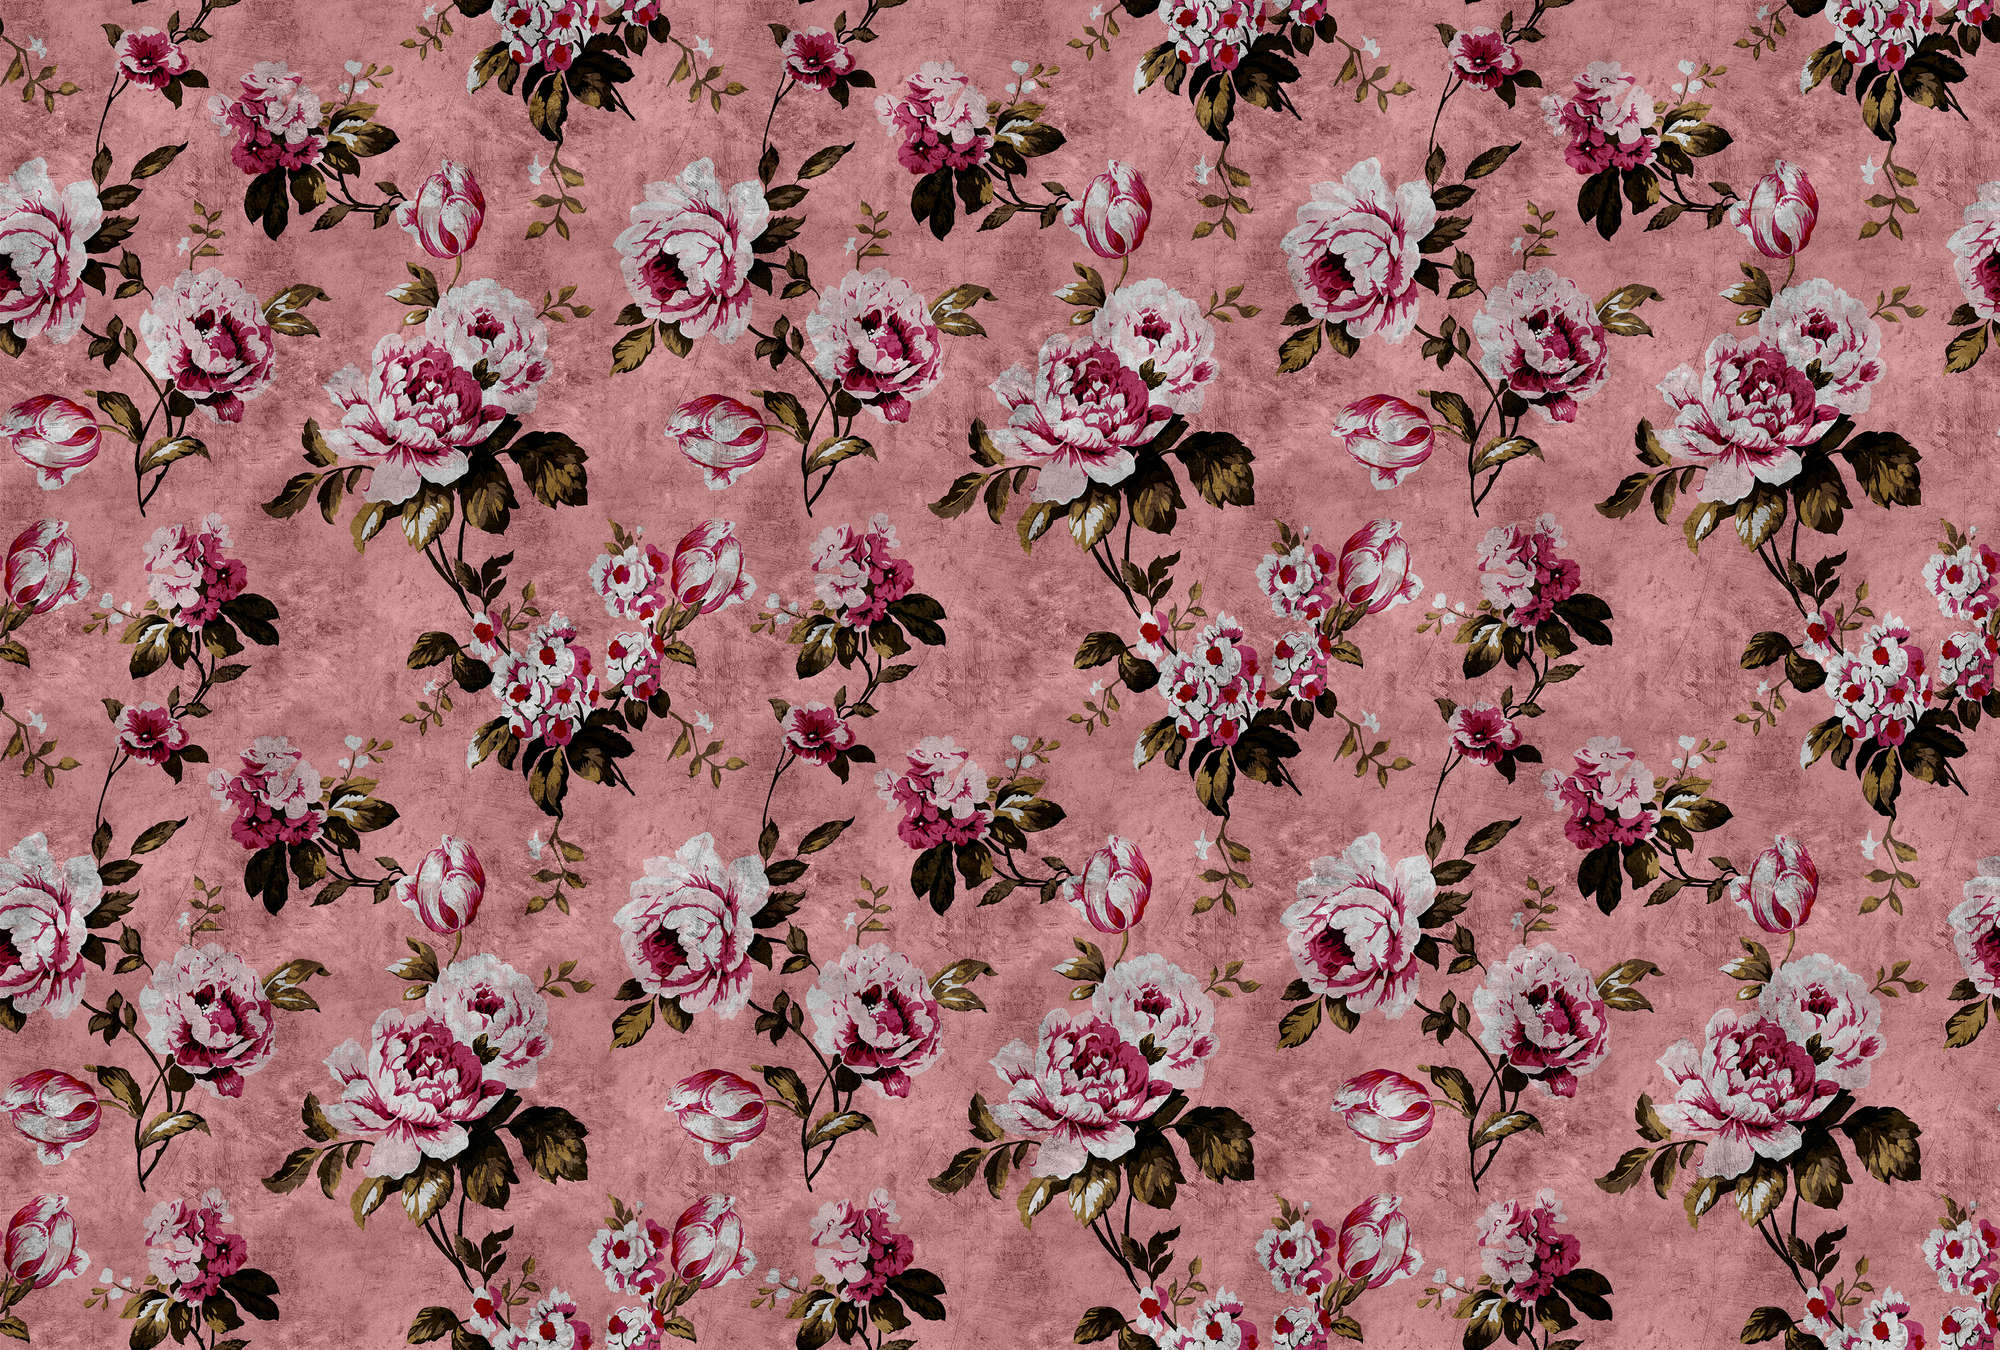             Wilde rozen 4 - Rozen fotobehang in retro look, roze in krasse structuur - Roze, Rood | Strukturen Vlieseline
        